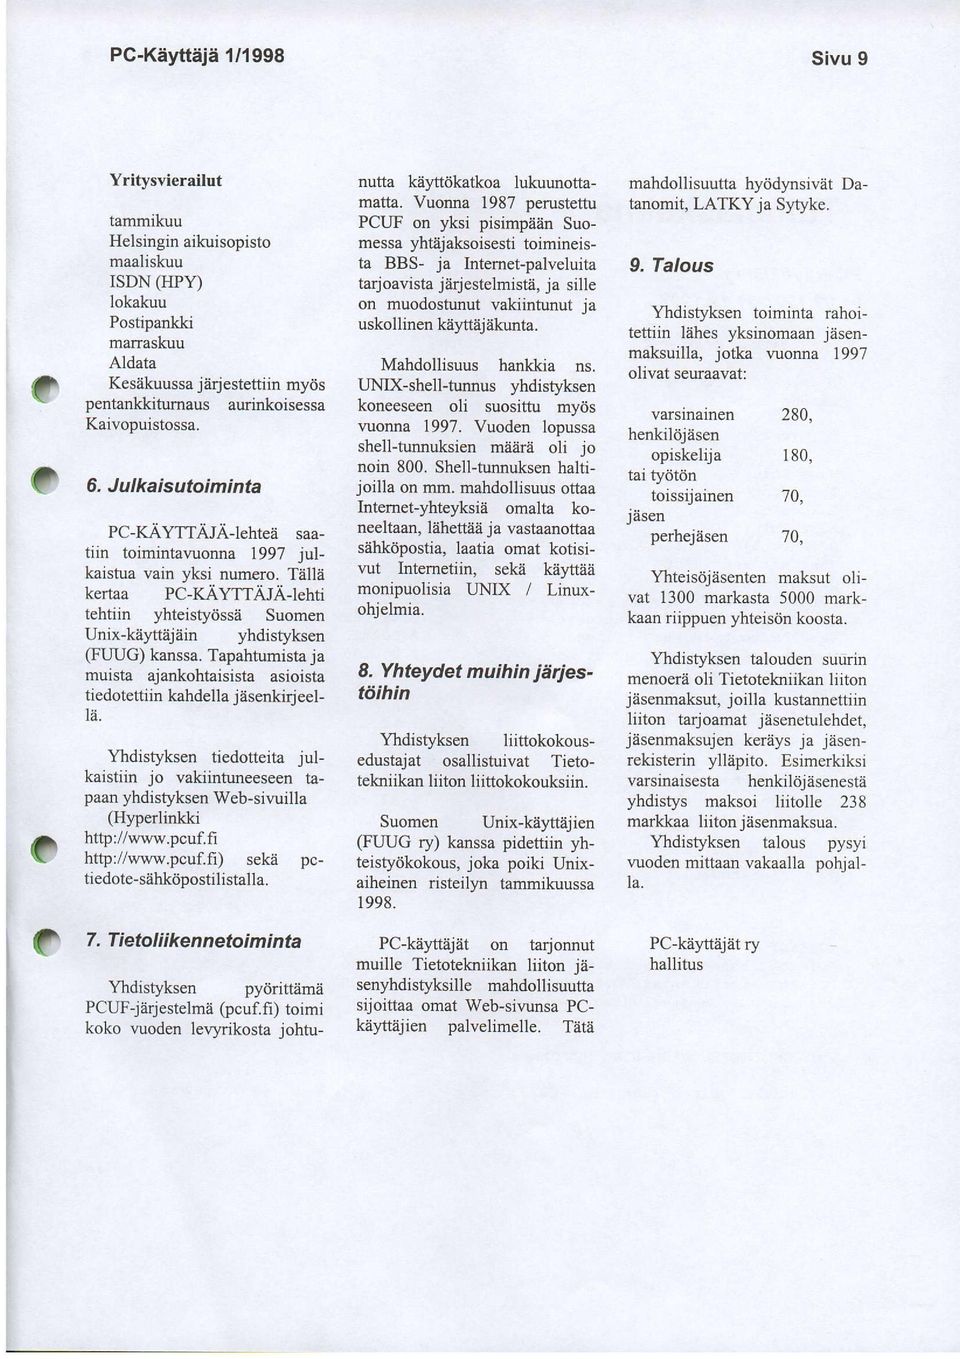 illii kerraa PC-KAyTTAJA-lehti tehtiin yhteistydsse Suomen Unix-keftejiiin yhdistyksen (FUUG) kanssa. Tapahtumisra ja muista ajankohtaisista asioista tiedotettiin kahdella jiisenkiqeel- 1ii.